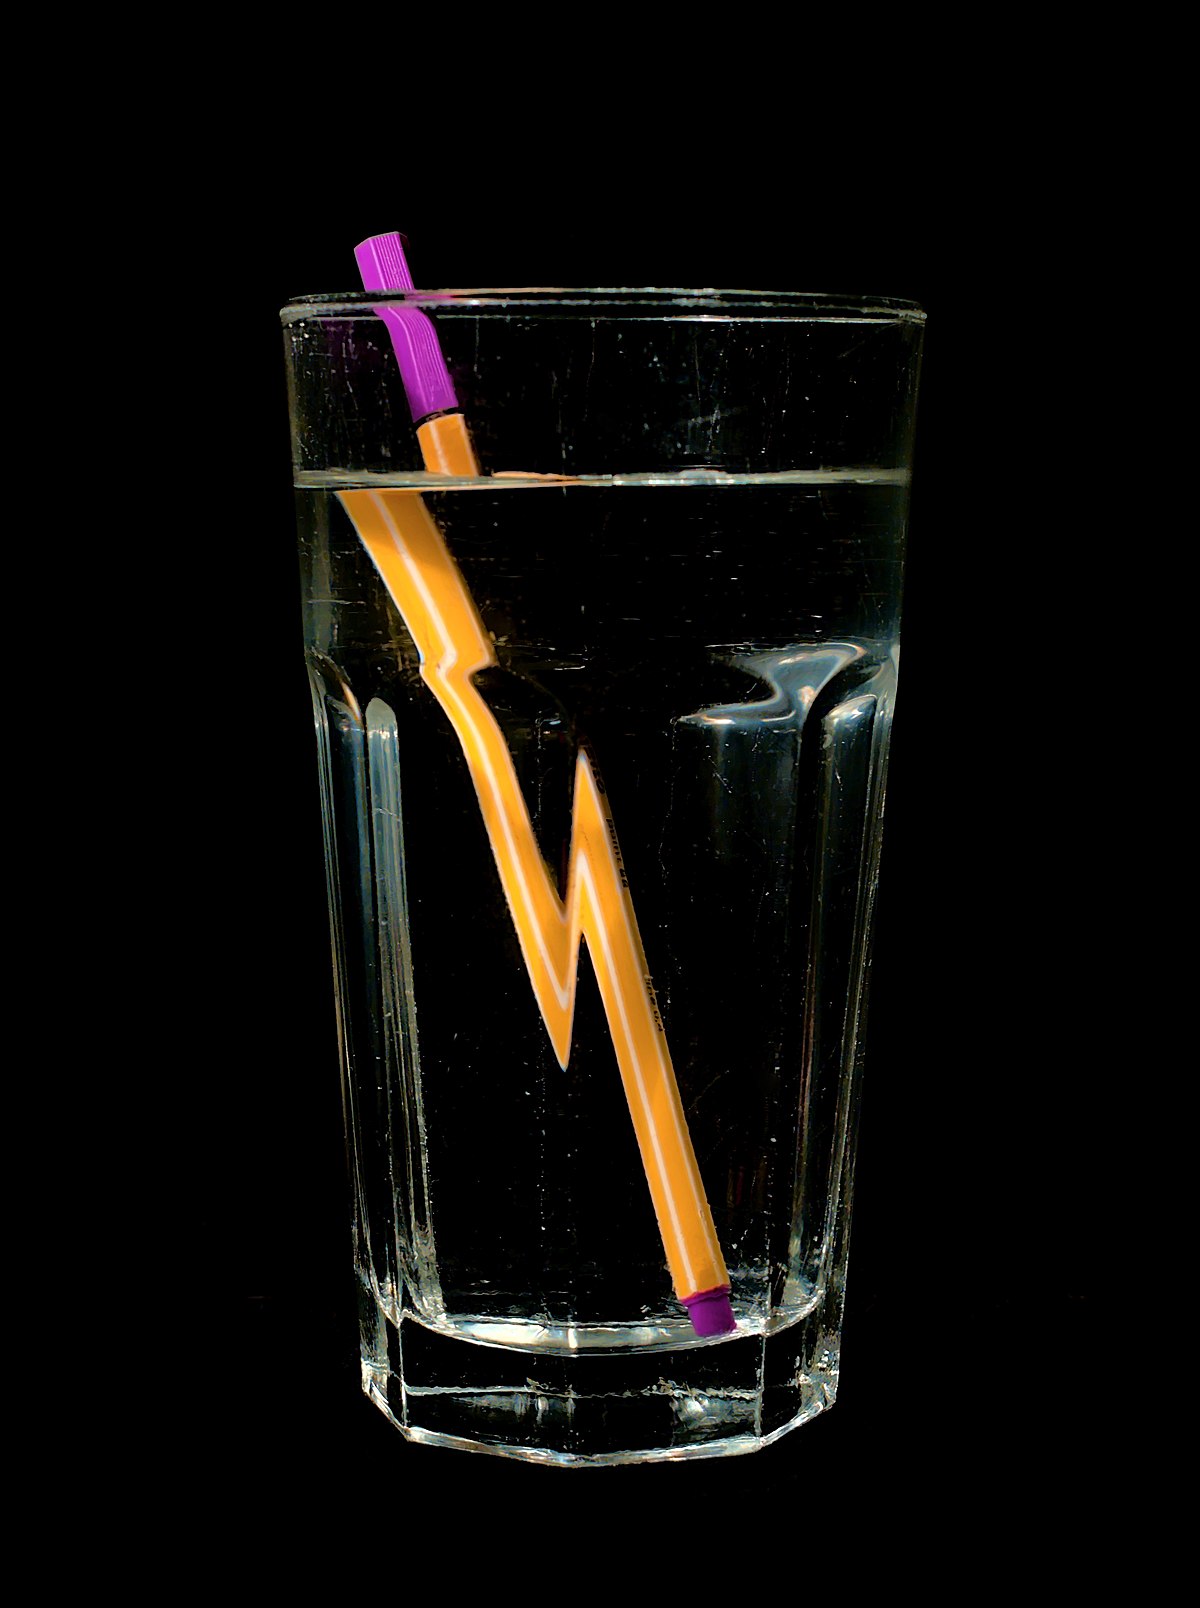 File:Stift in Wasserglas.jpg - Wikimedia Commons